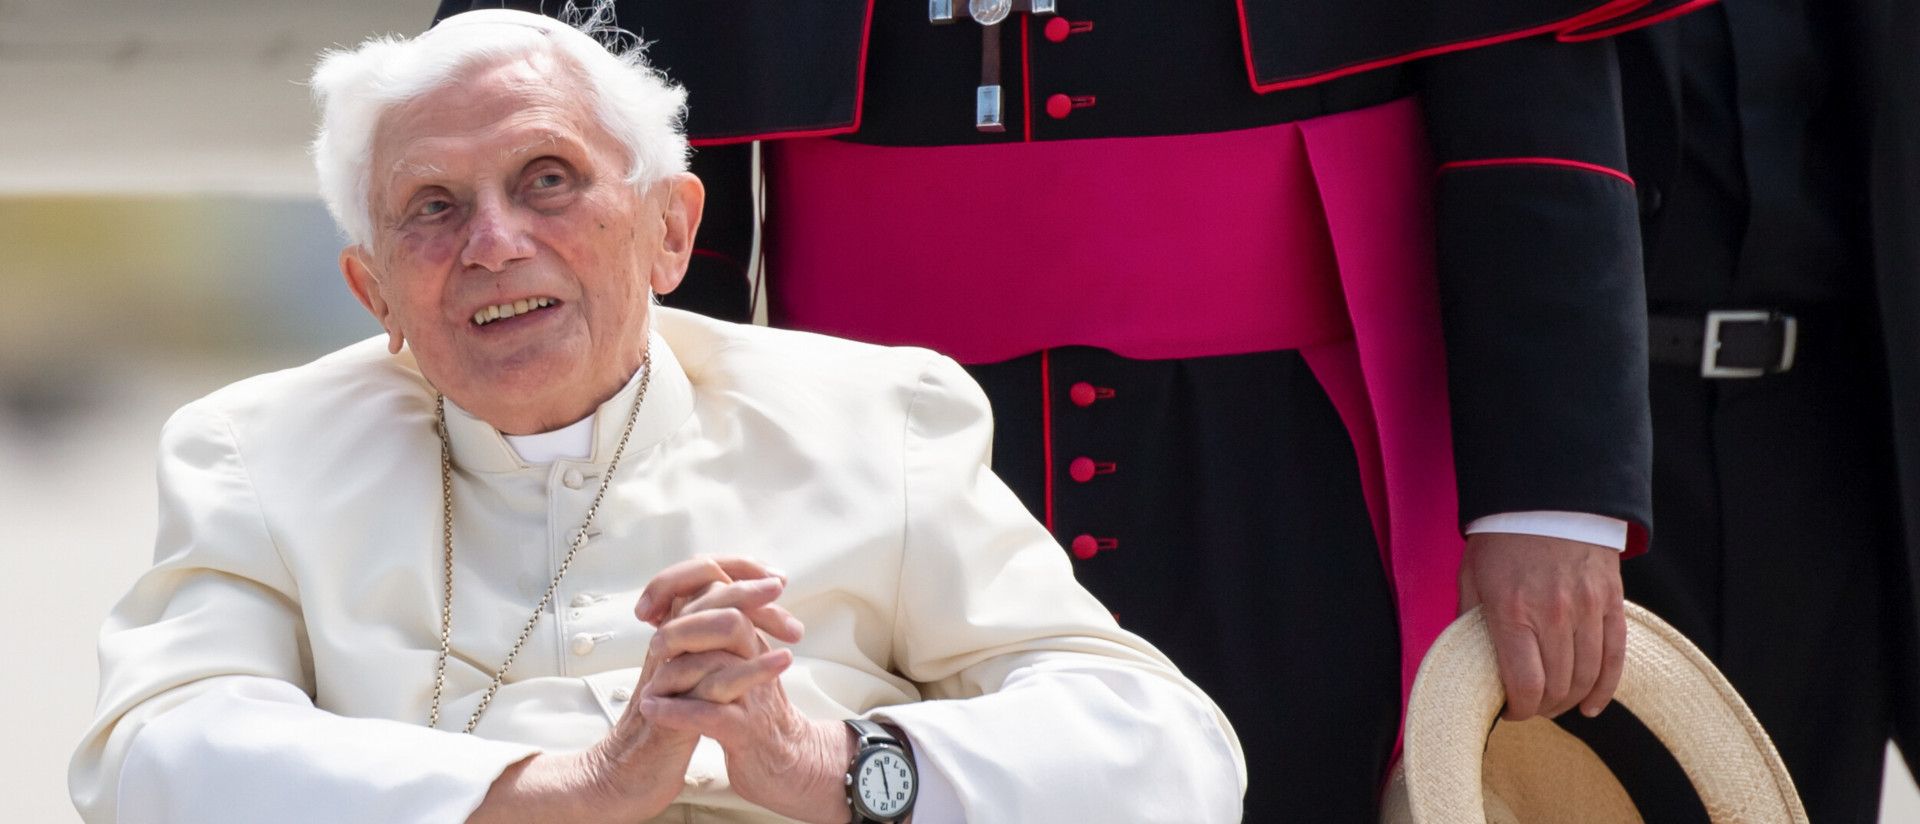 Der emeritierte Papst Benedikt XVI. im Rollstuhl, Juni 2020